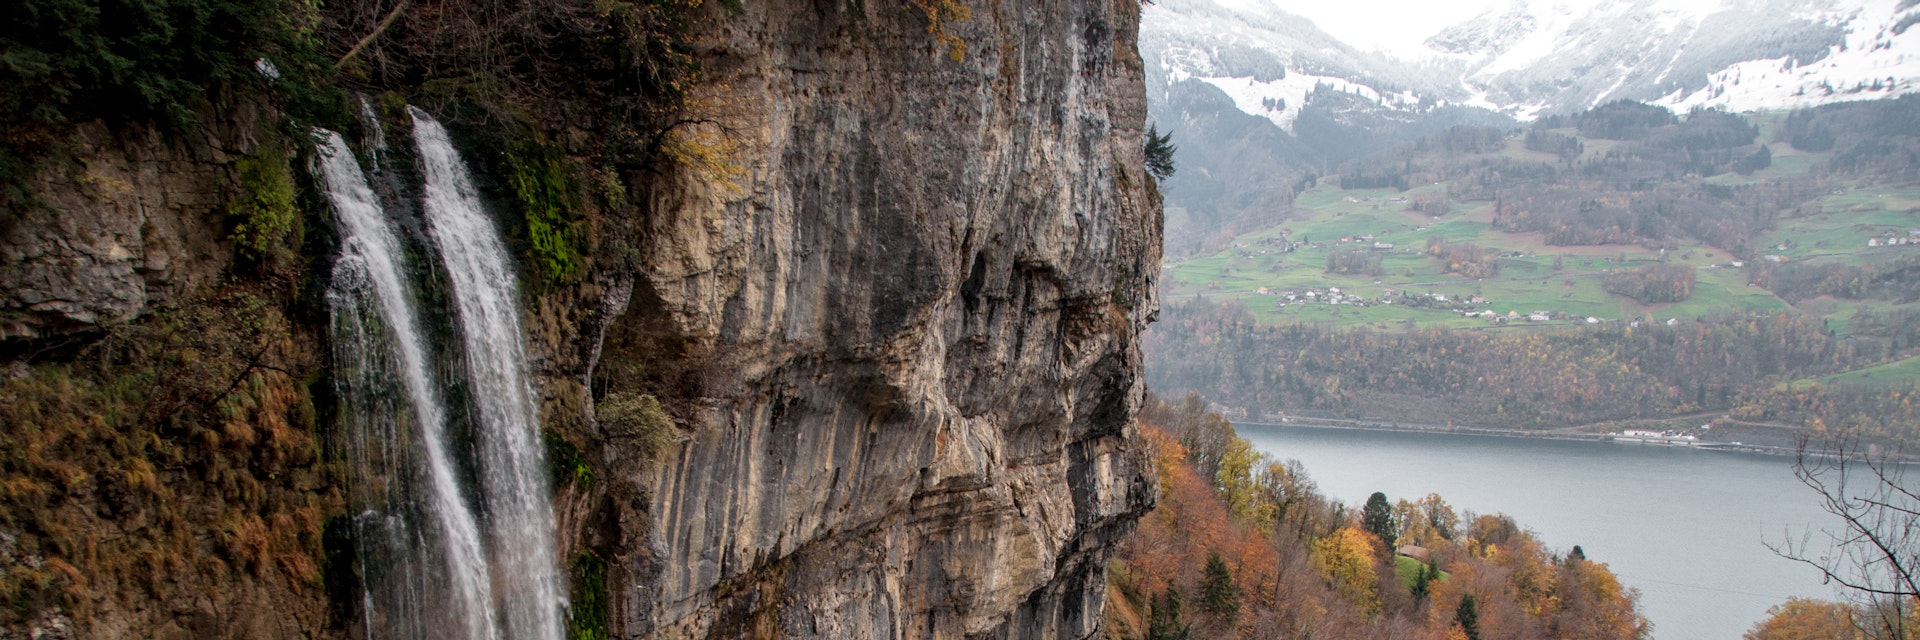 Seerenbachfälle, waterfall in Switzerland.